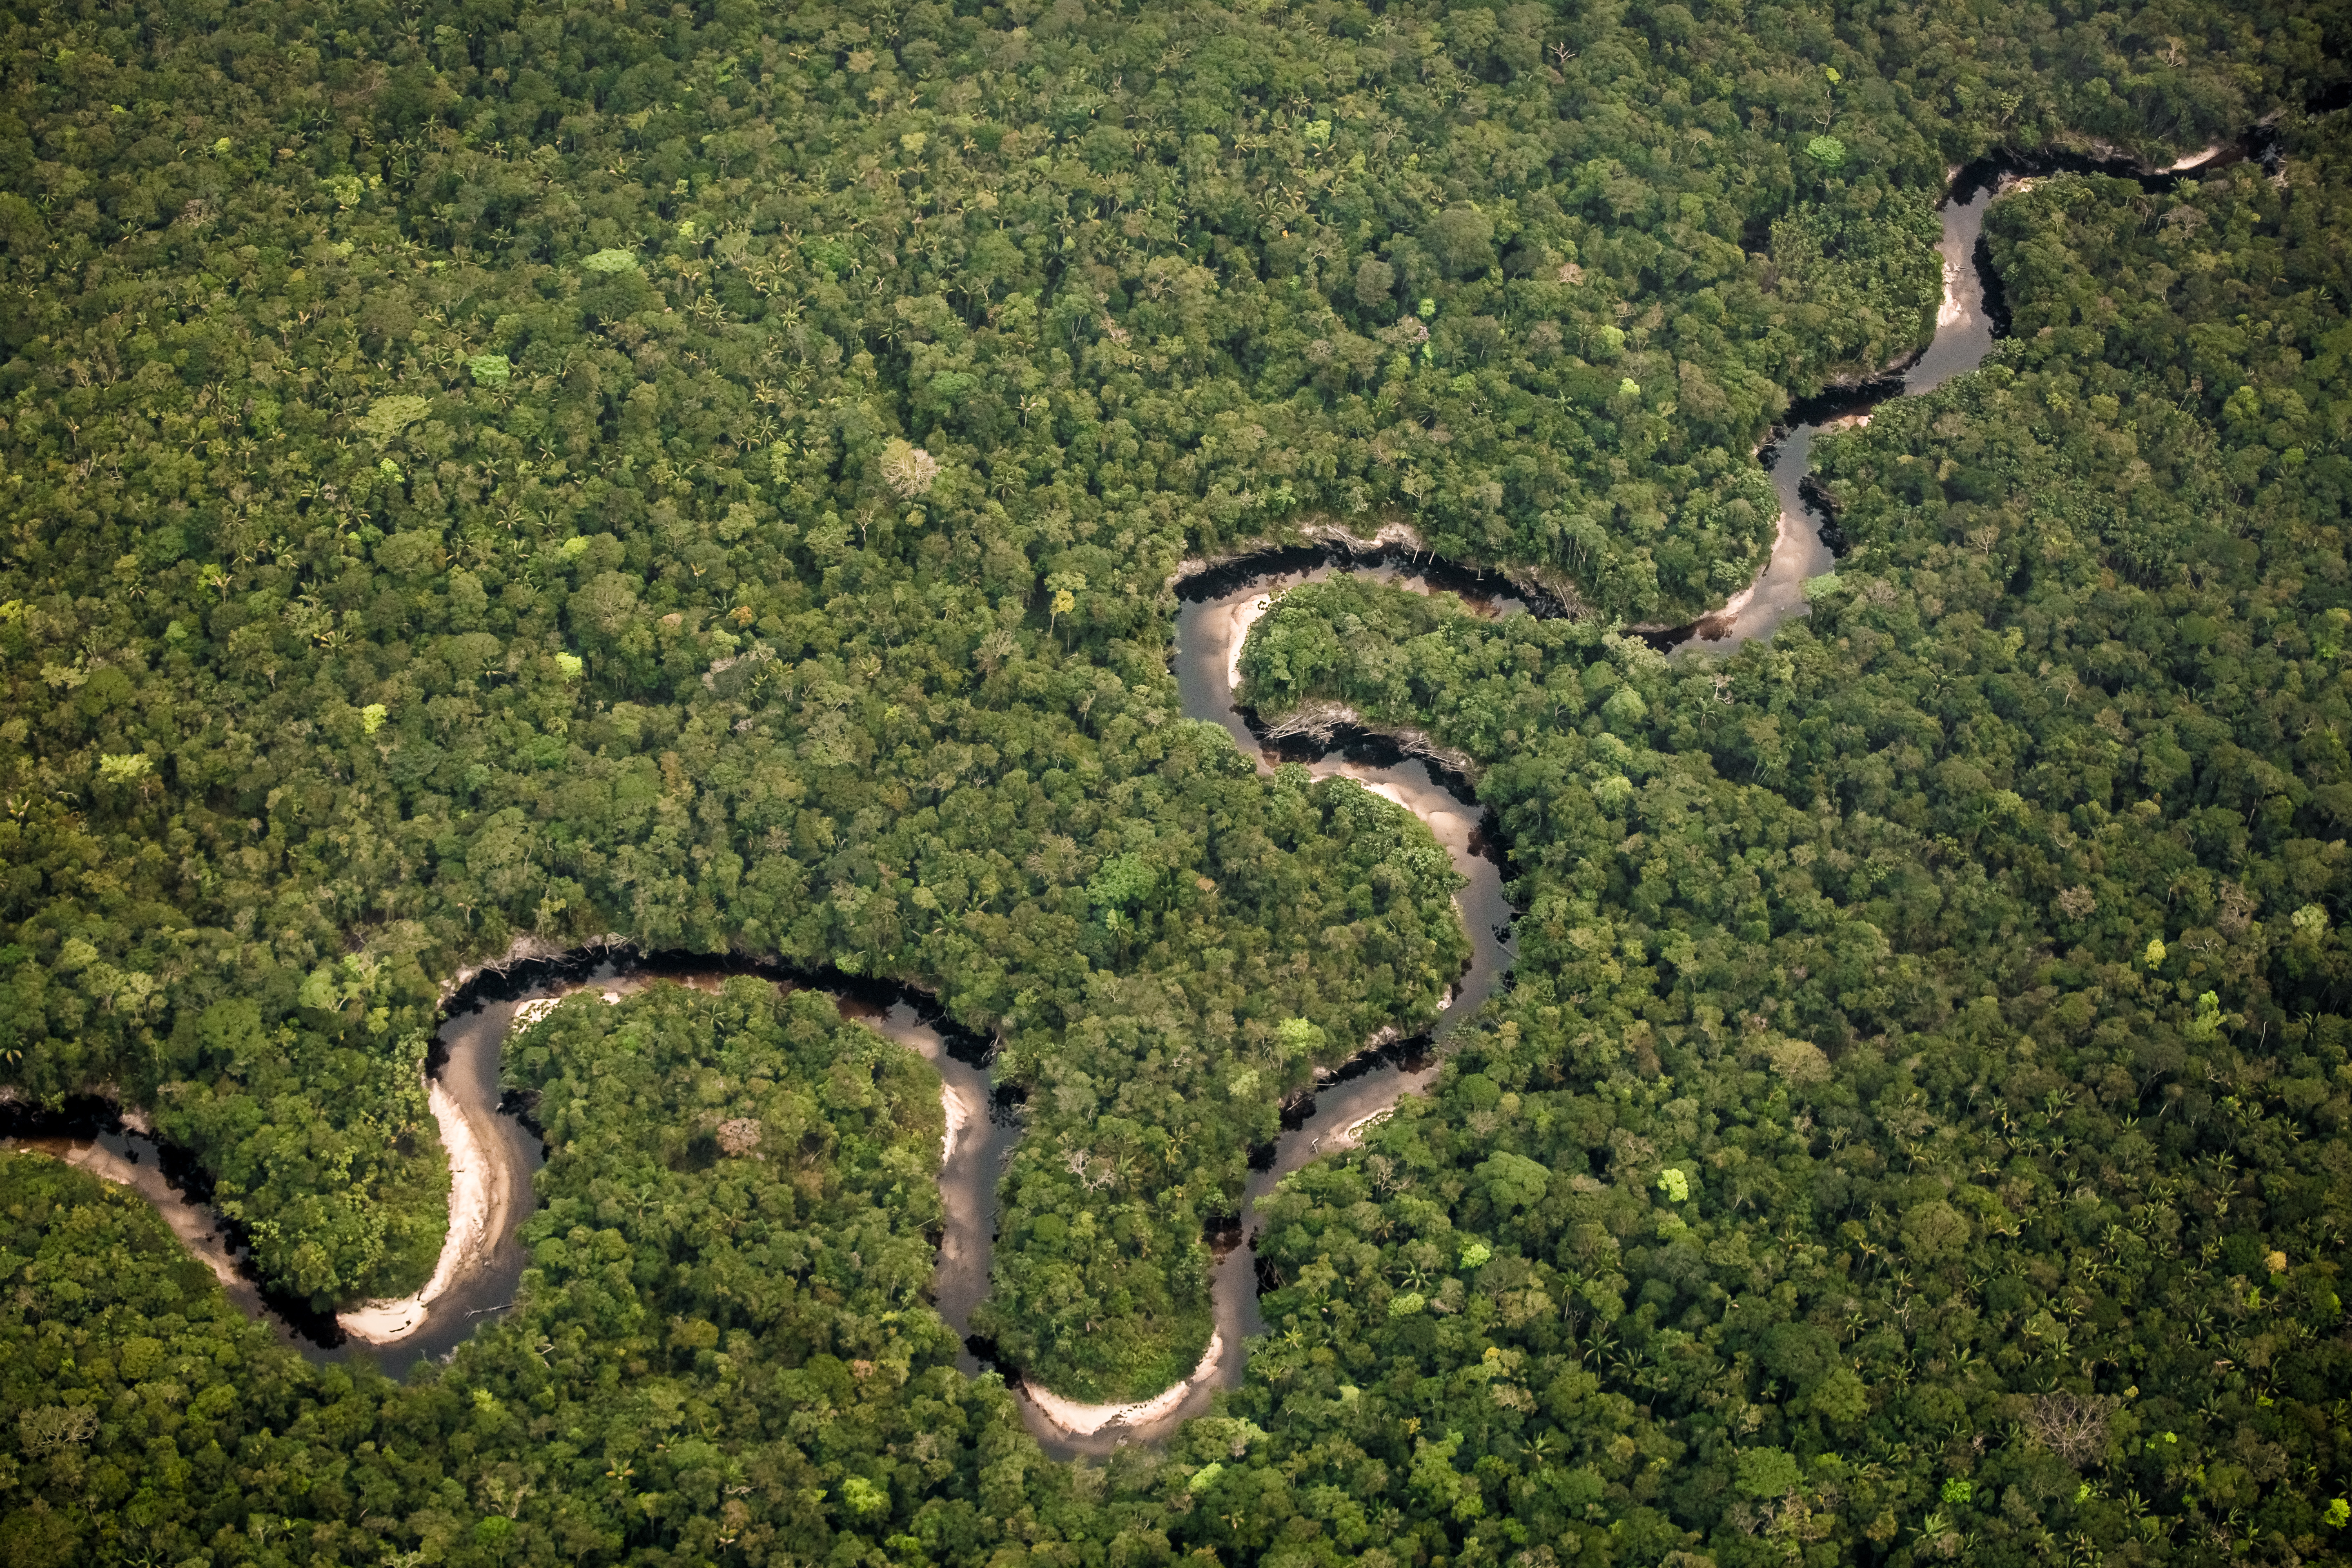 Aprobación histórica de capital para áreas protegidas en Colombia, informa la WWF